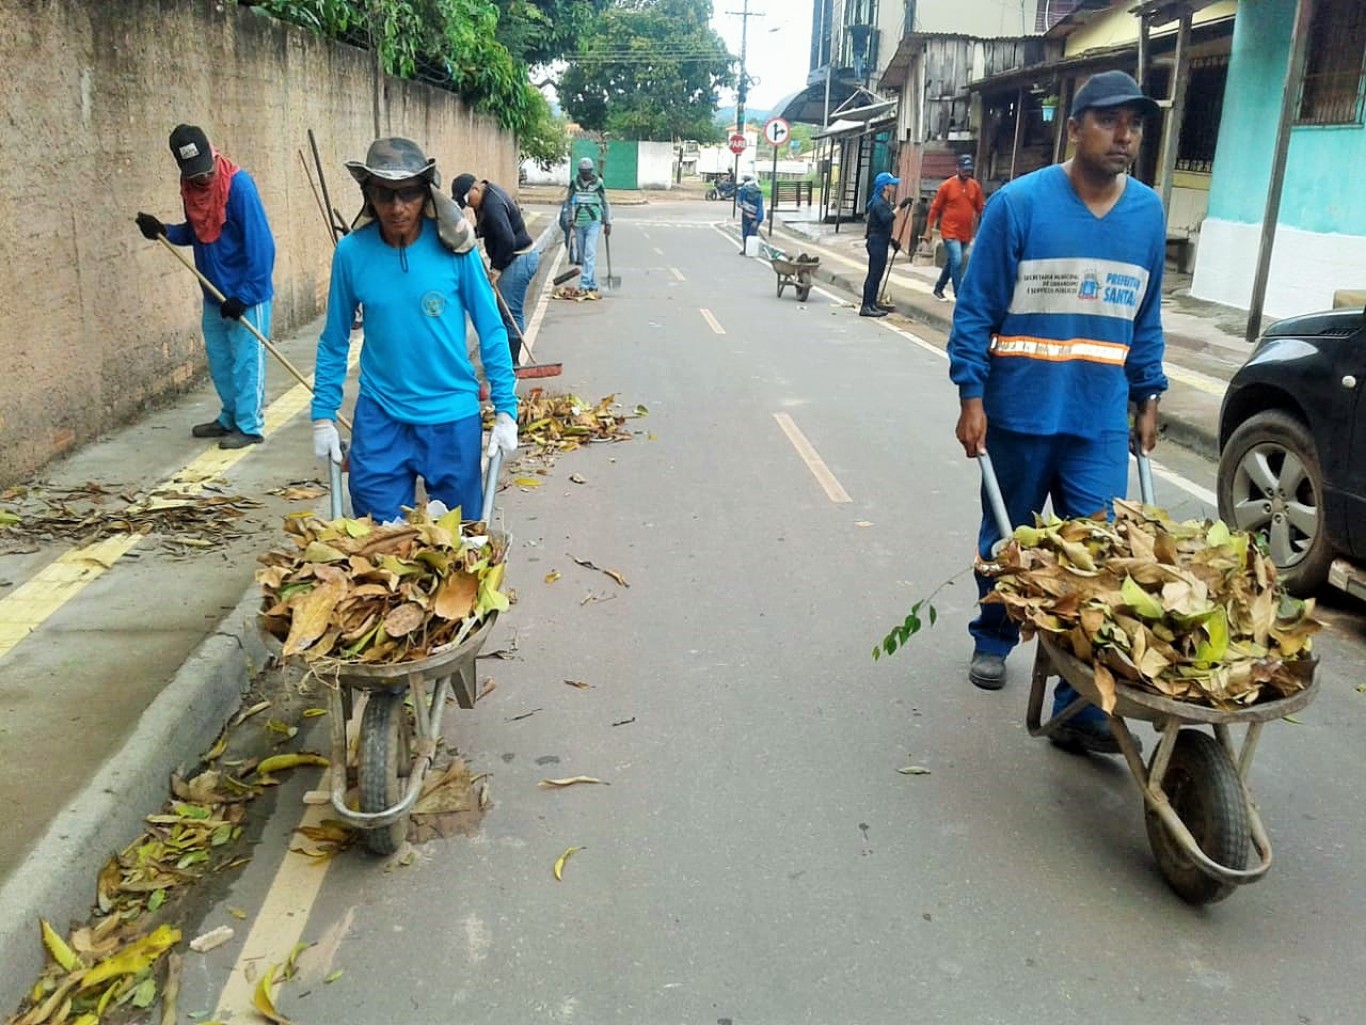 Serviços de limpeza avançam na manutenção e organização das vias urbanizadas de Santarém